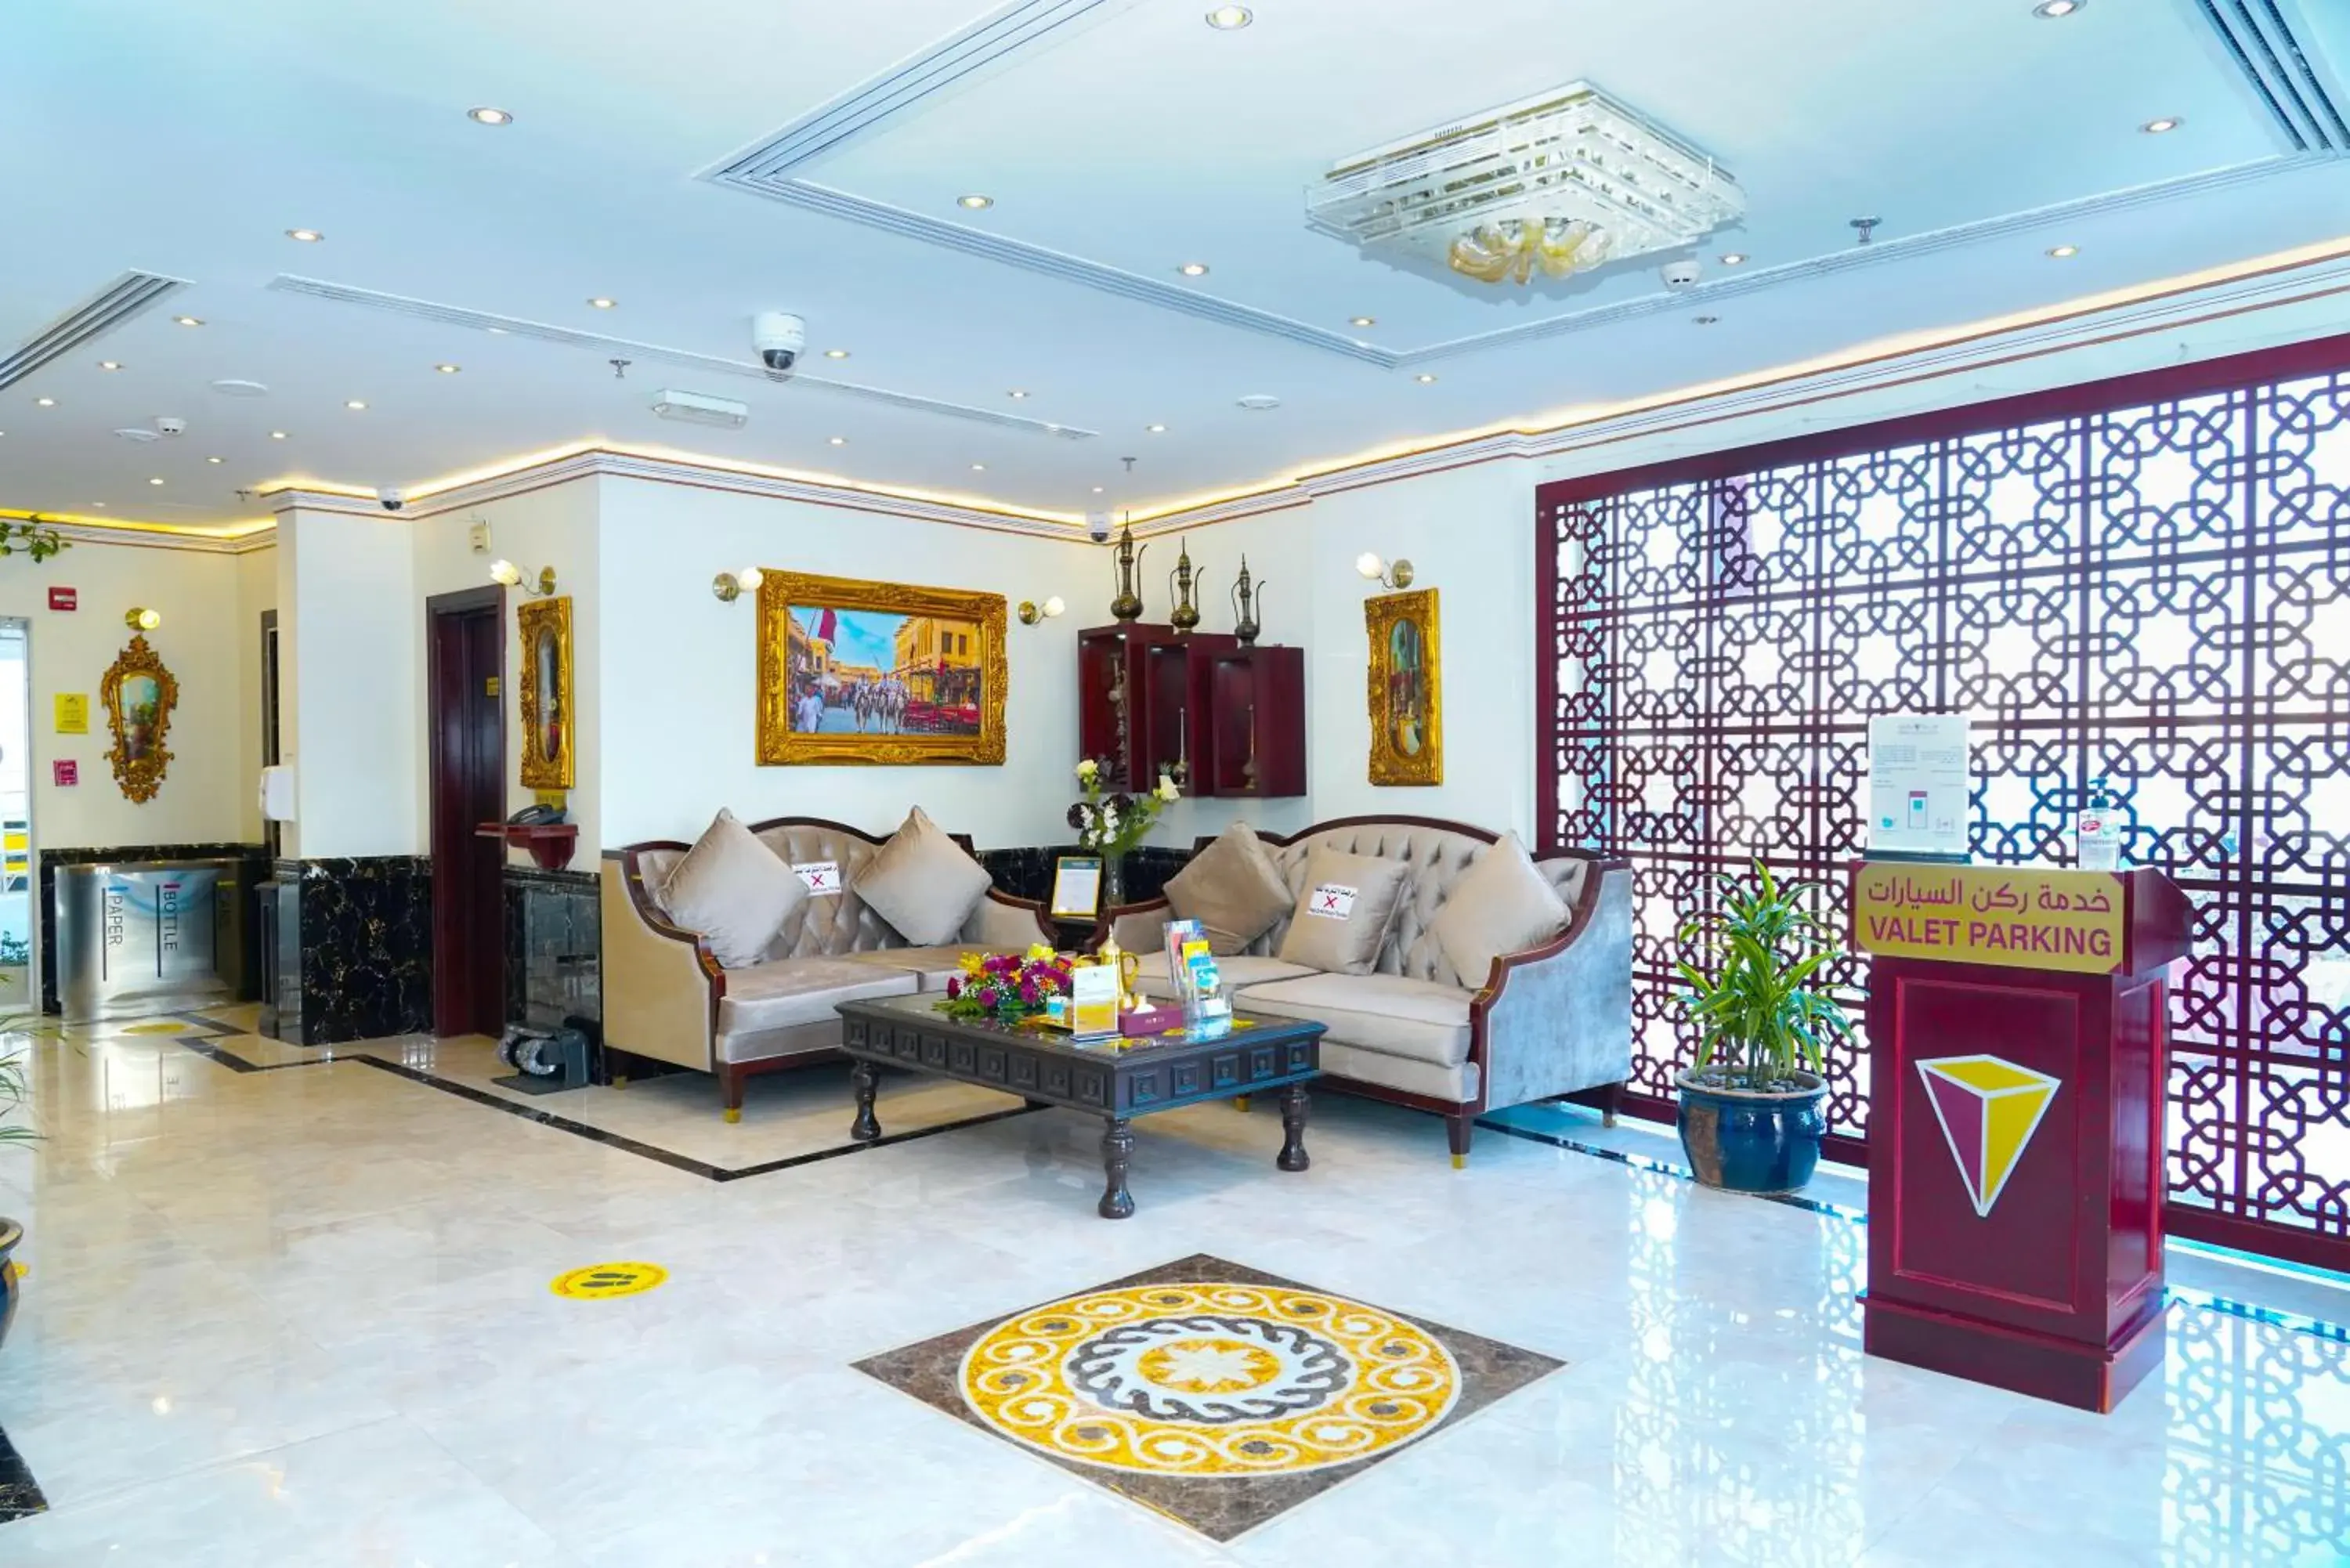 Lobby or reception in La Villa Palace Hotel